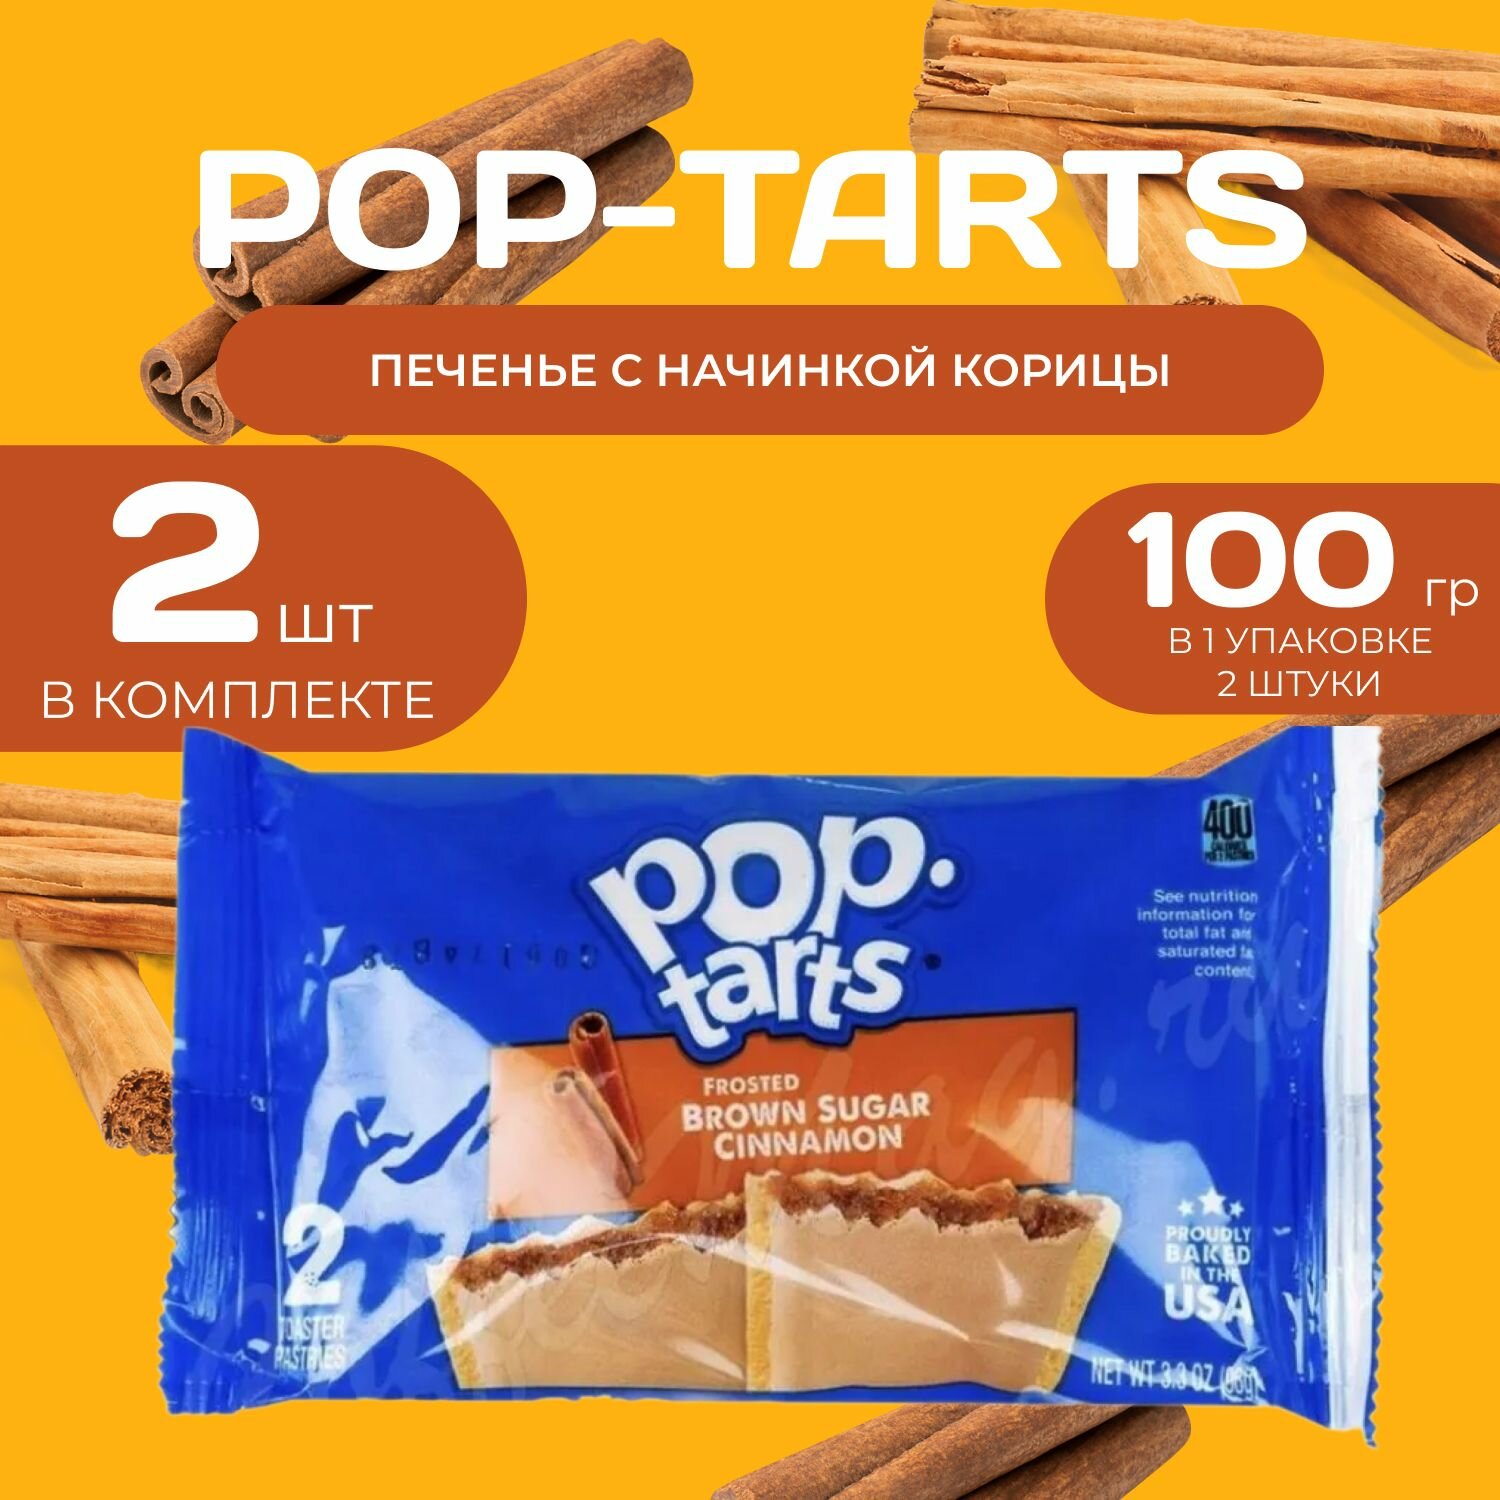 Pop tarts Печенье с начинкой корицы 2 шт. в уп (96 гр.) 2 уп. в наборе